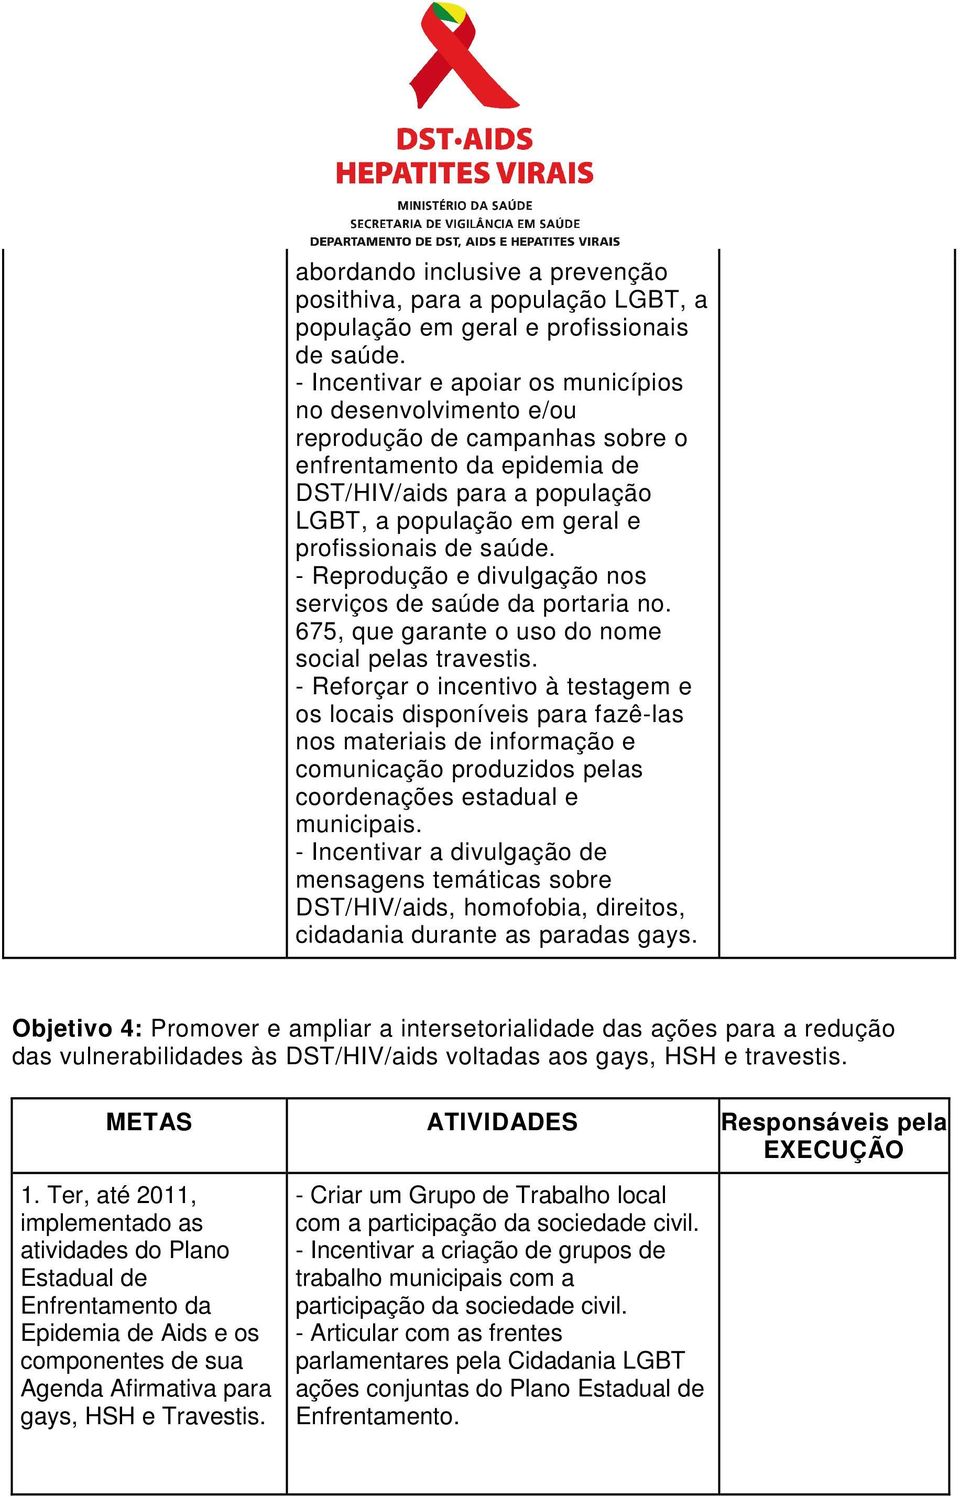 saúde. - Reprodução e divulgação nos serviços de saúde da portaria no. 675, que garante o uso do nome social pelas travestis.